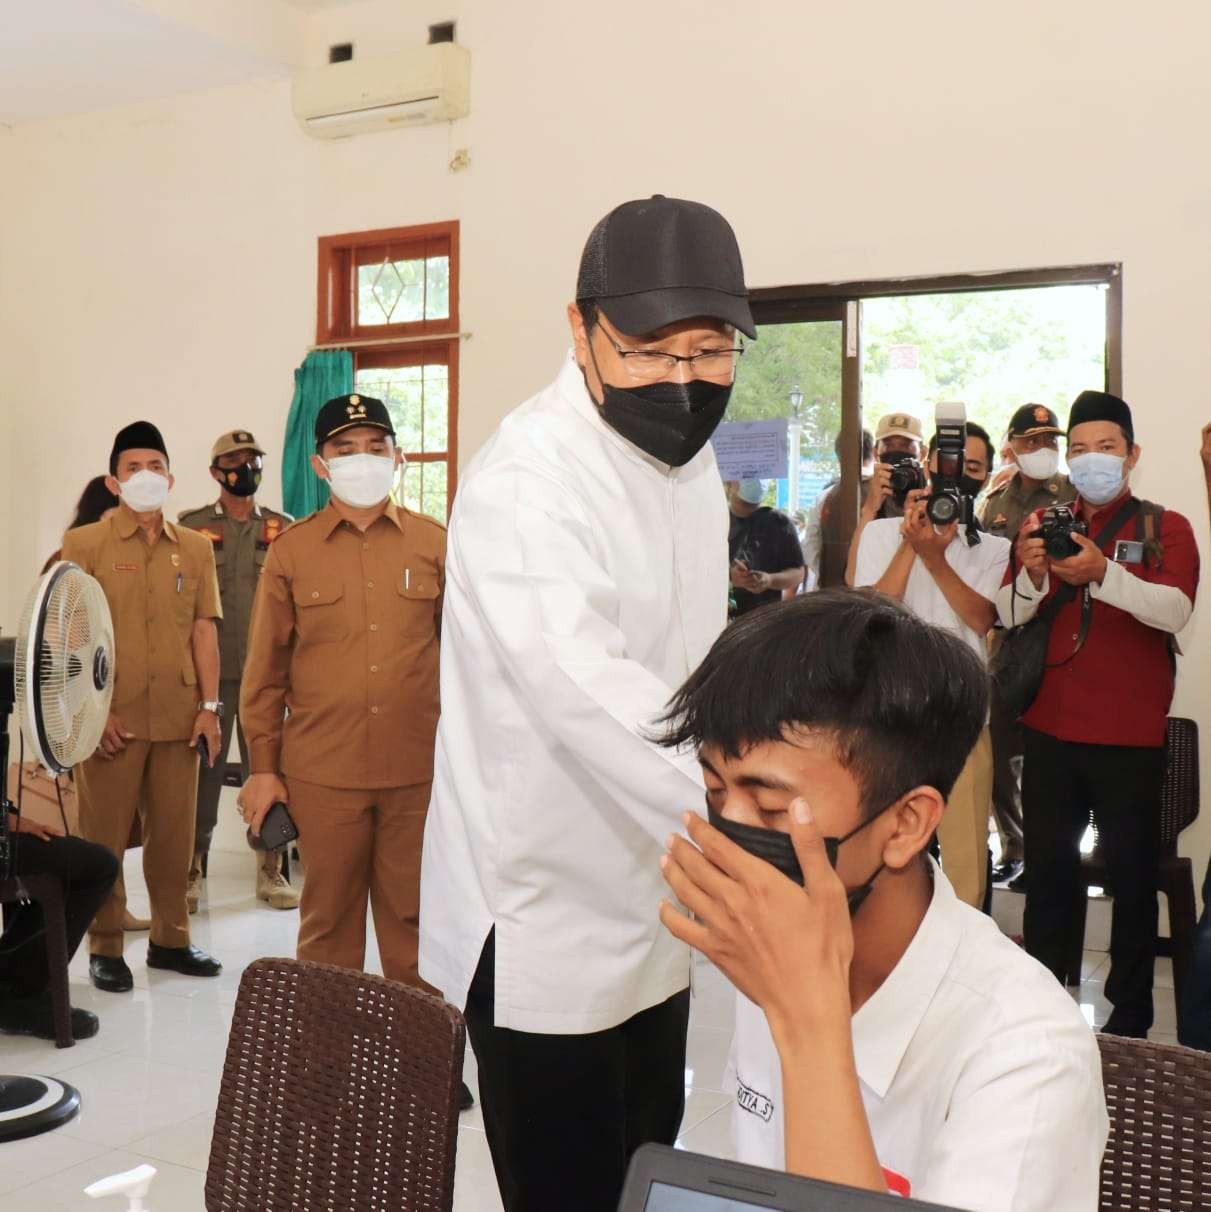 Walikota Pasuruan Saifullah Yusuf (Gus Ipul) saat mengunjungi rumah vaksinasi Kota Pasuruan. (Foto: Dok. Dinas Kominfo Kota Pasuruan)